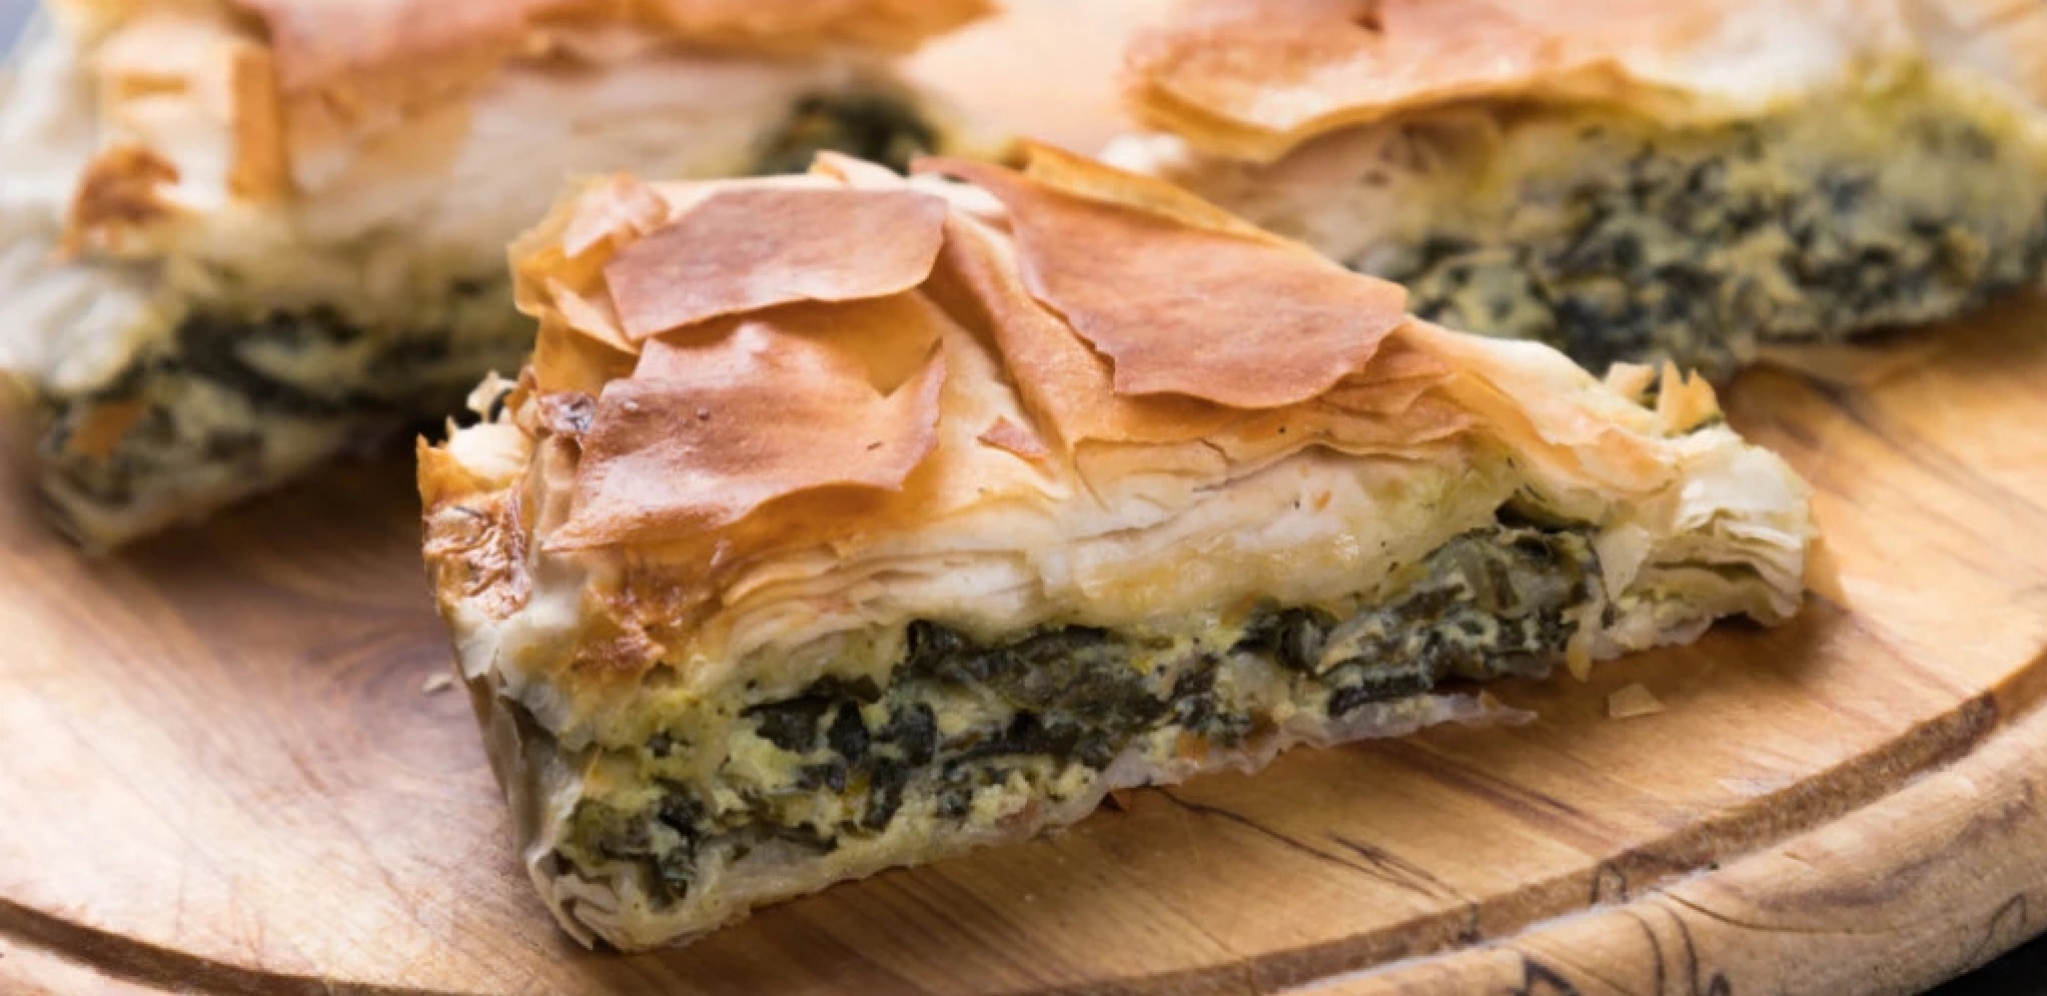 HOROR Beograđanin naručio pitu u pekari, a unutra našao ovo: "Zamislite da sam progutao, mogao sam da umrem!" (FOTO)